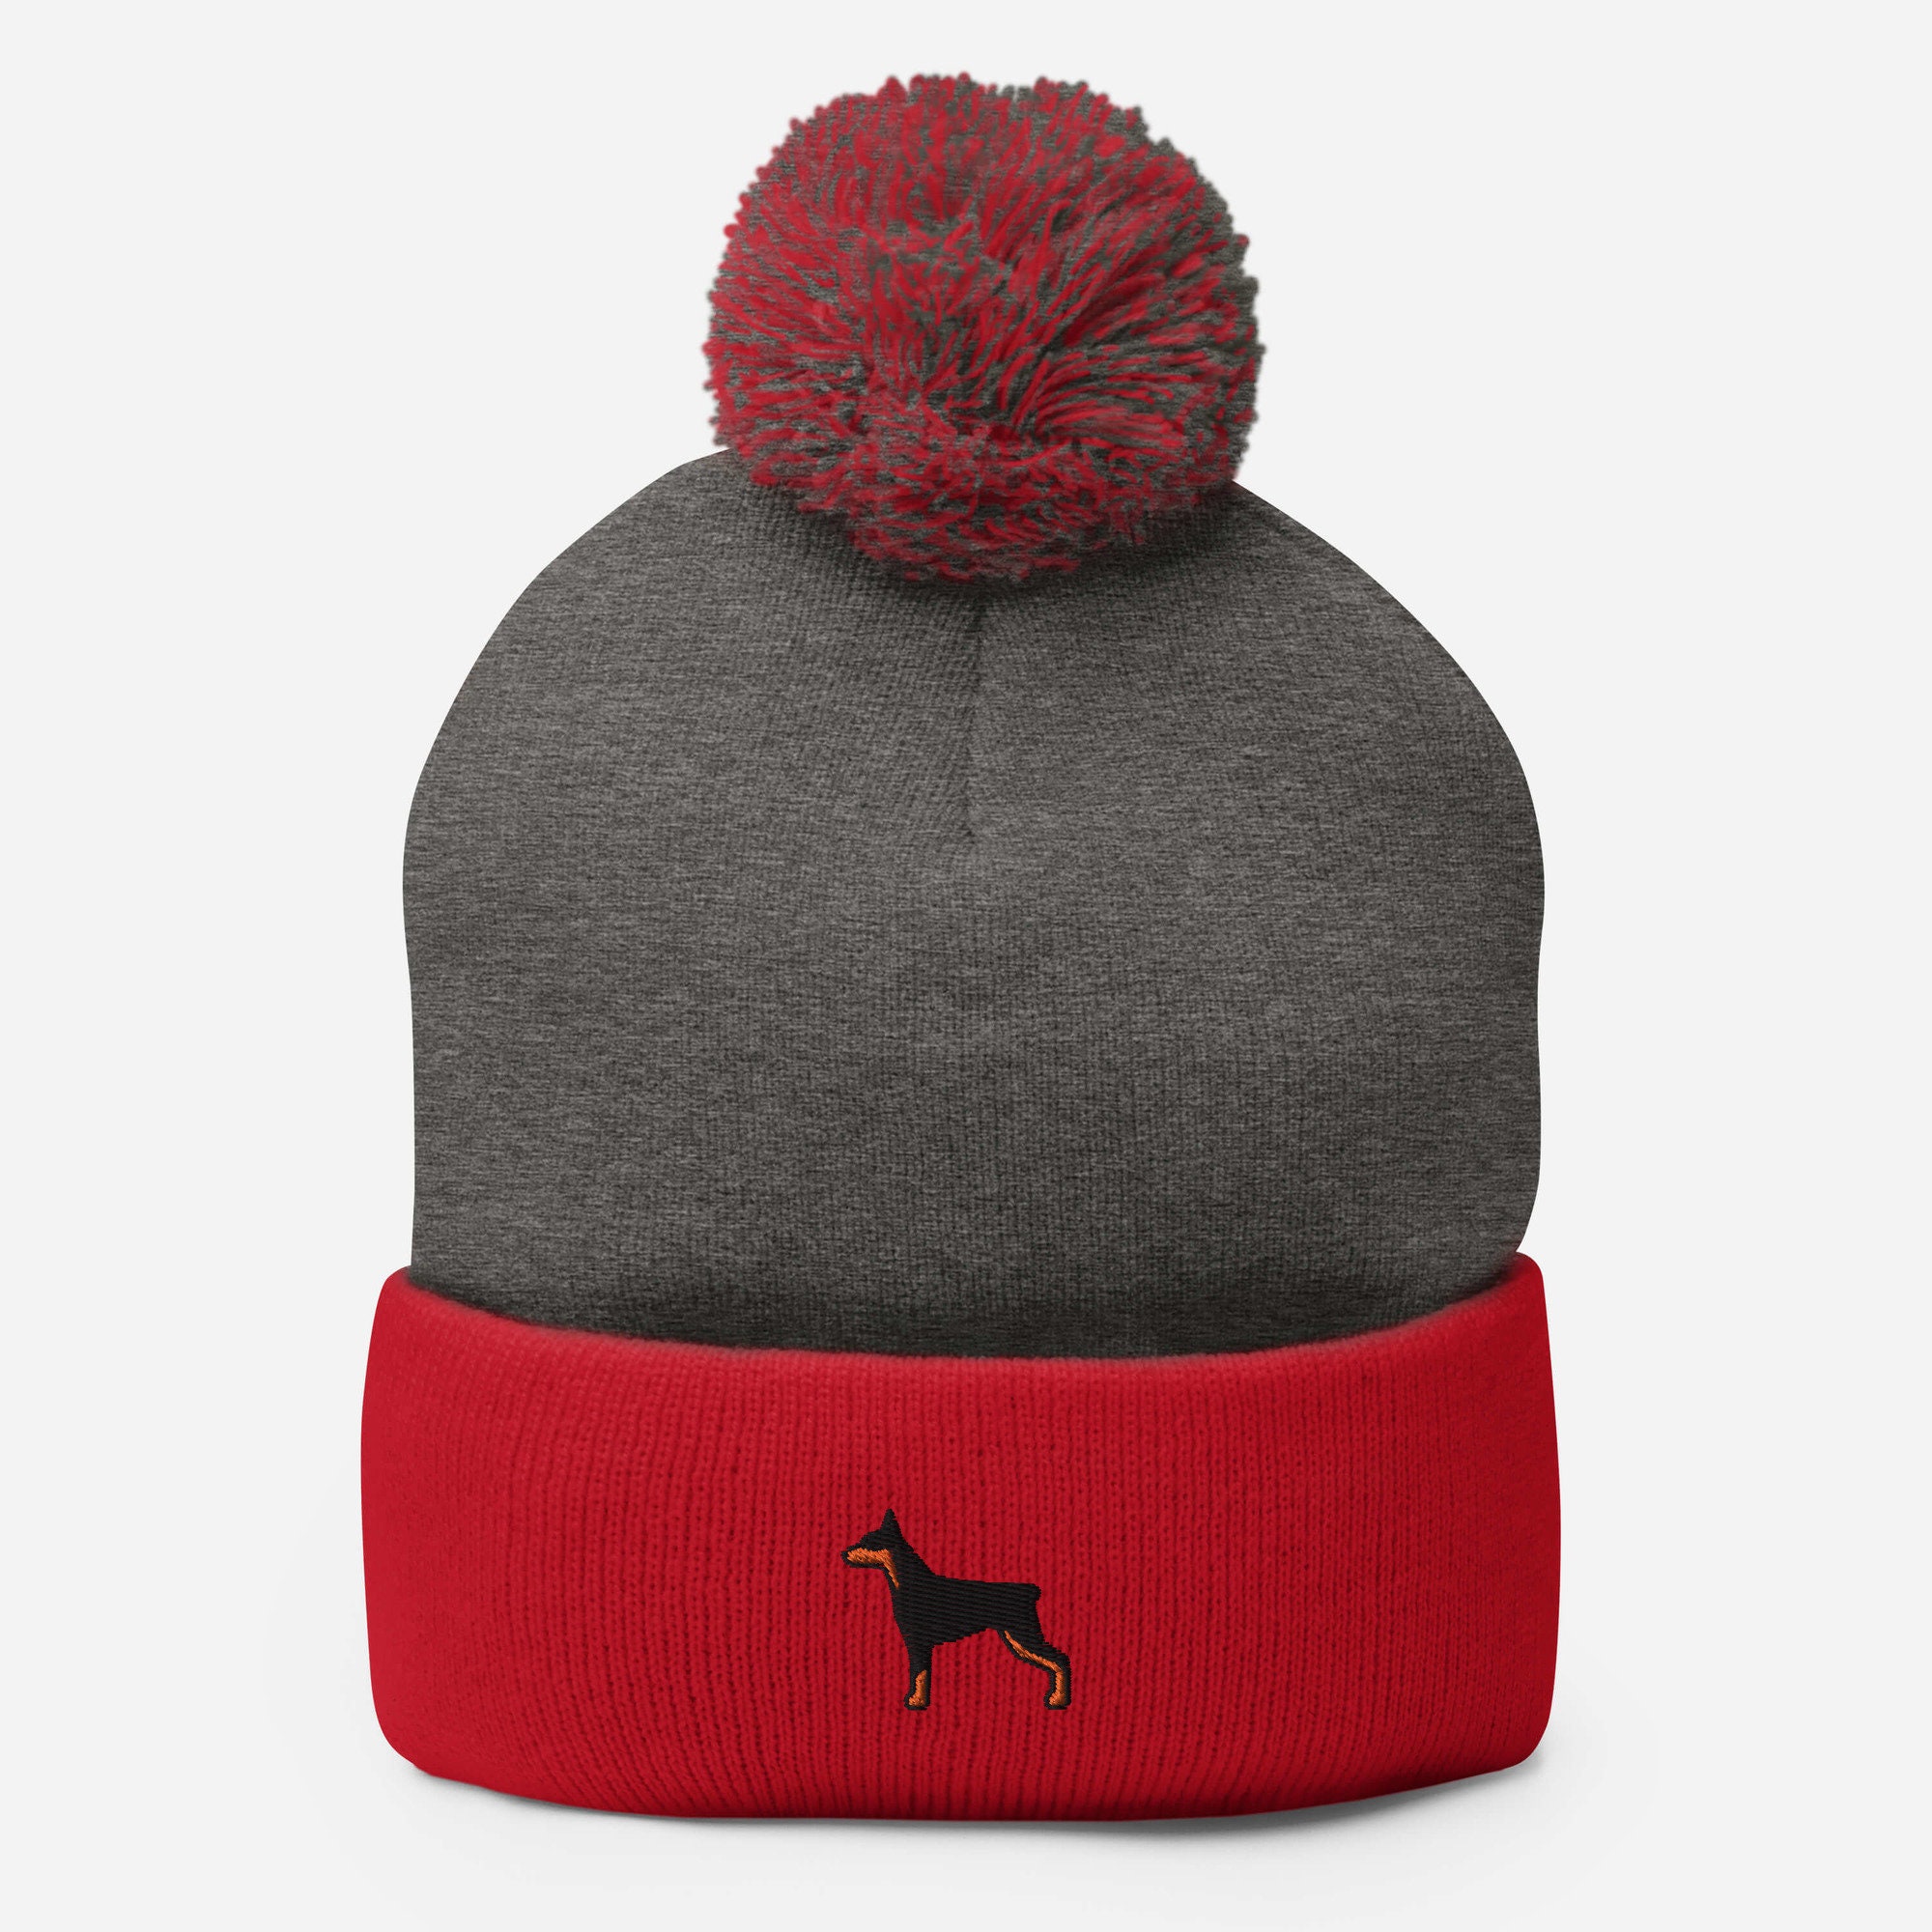 zhouyongz Black Brown Doberman Pinscher Knit Cap Boy Girl Winter Knitted Outdoor Warm Hat 